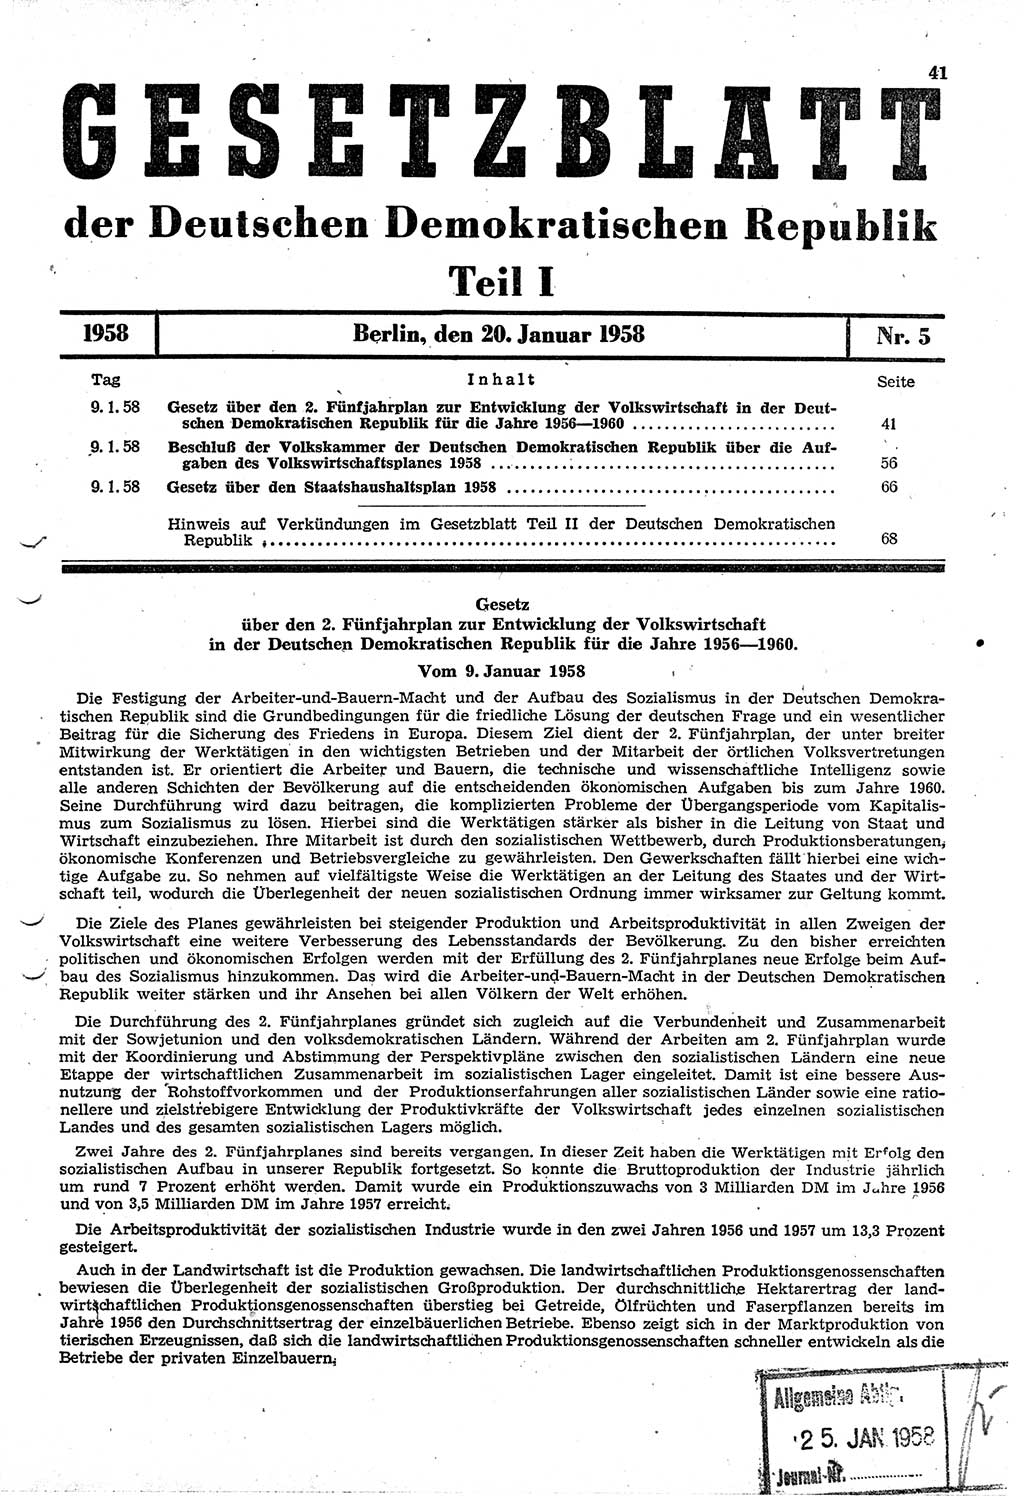 Gesetzblatt (GBl.) der Deutschen Demokratischen Republik (DDR) Teil Ⅰ 1958, Seite 41 (GBl. DDR Ⅰ 1958, S. 41)